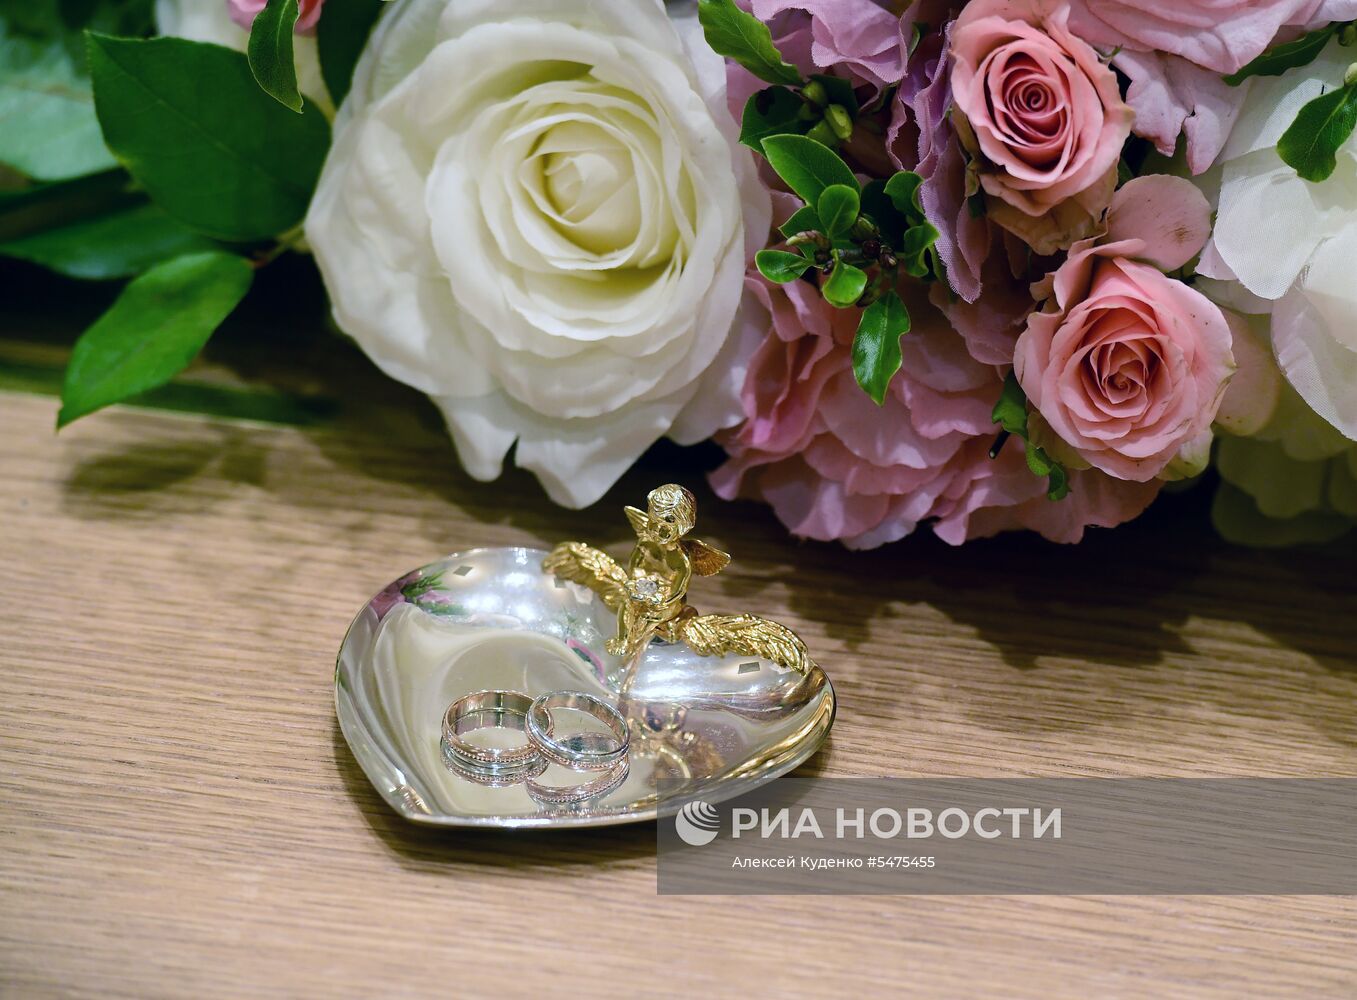 Открытие Московского областного дворца бракосочетания 